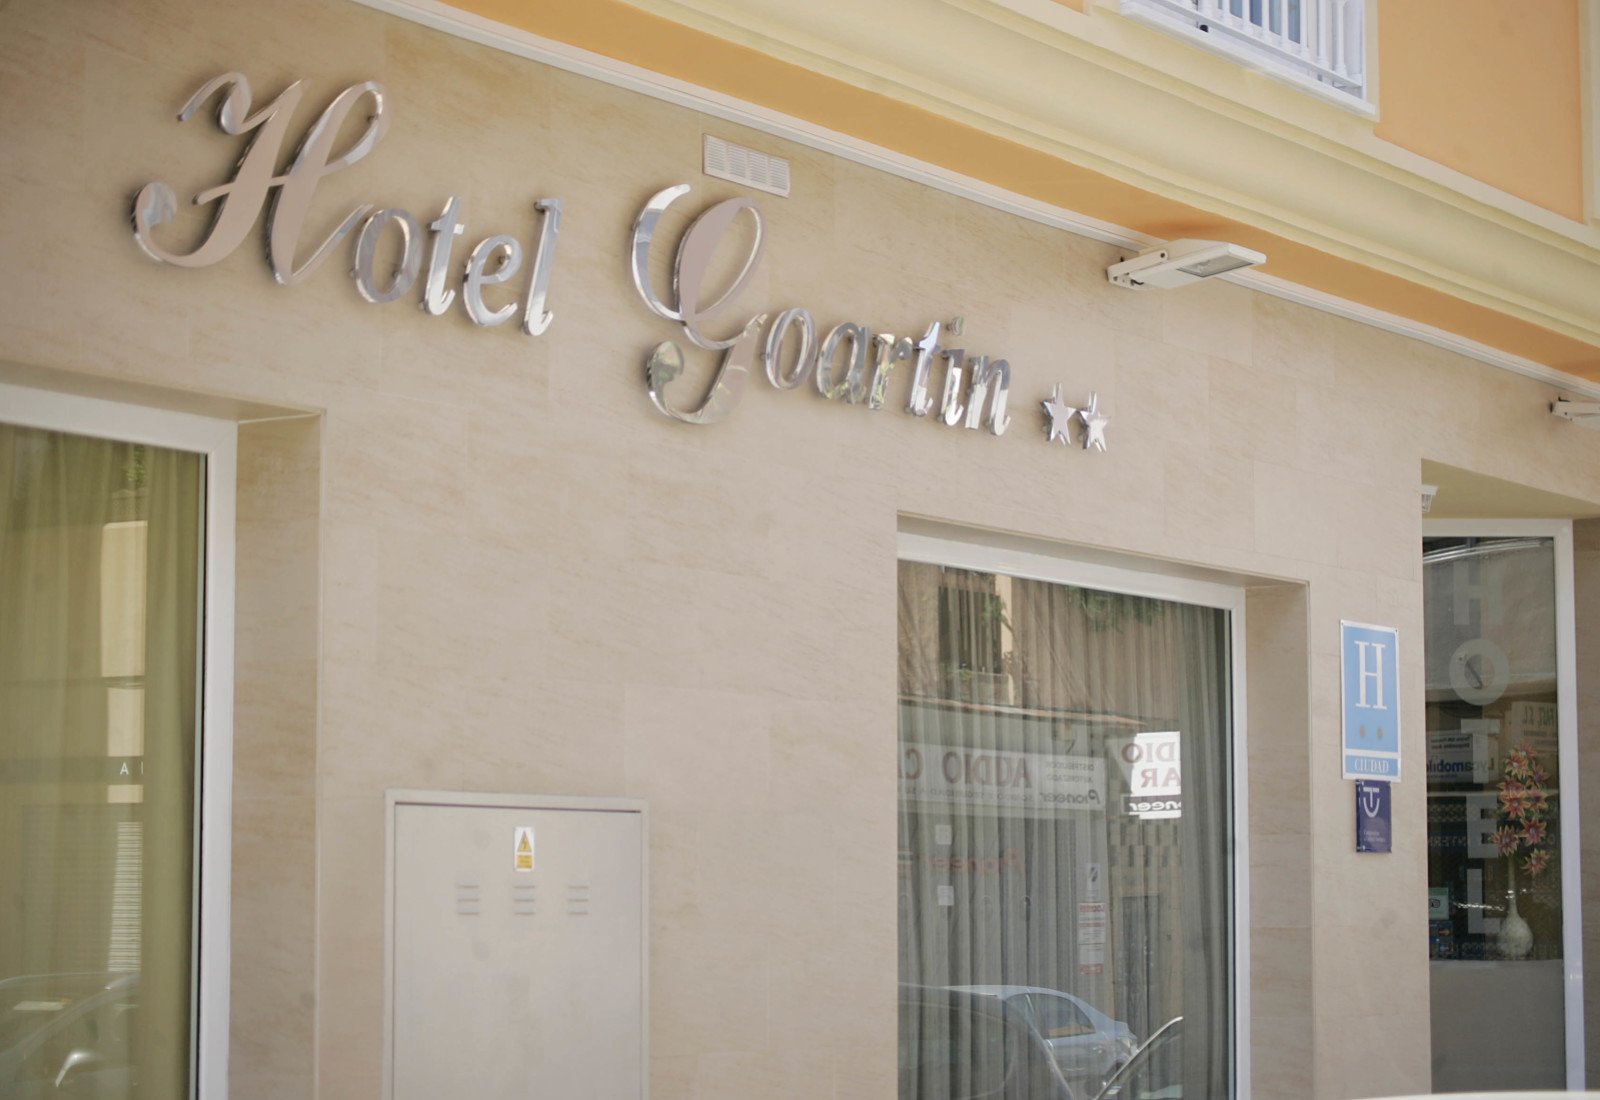 Visite nuestro hotel Goartin en Malaga